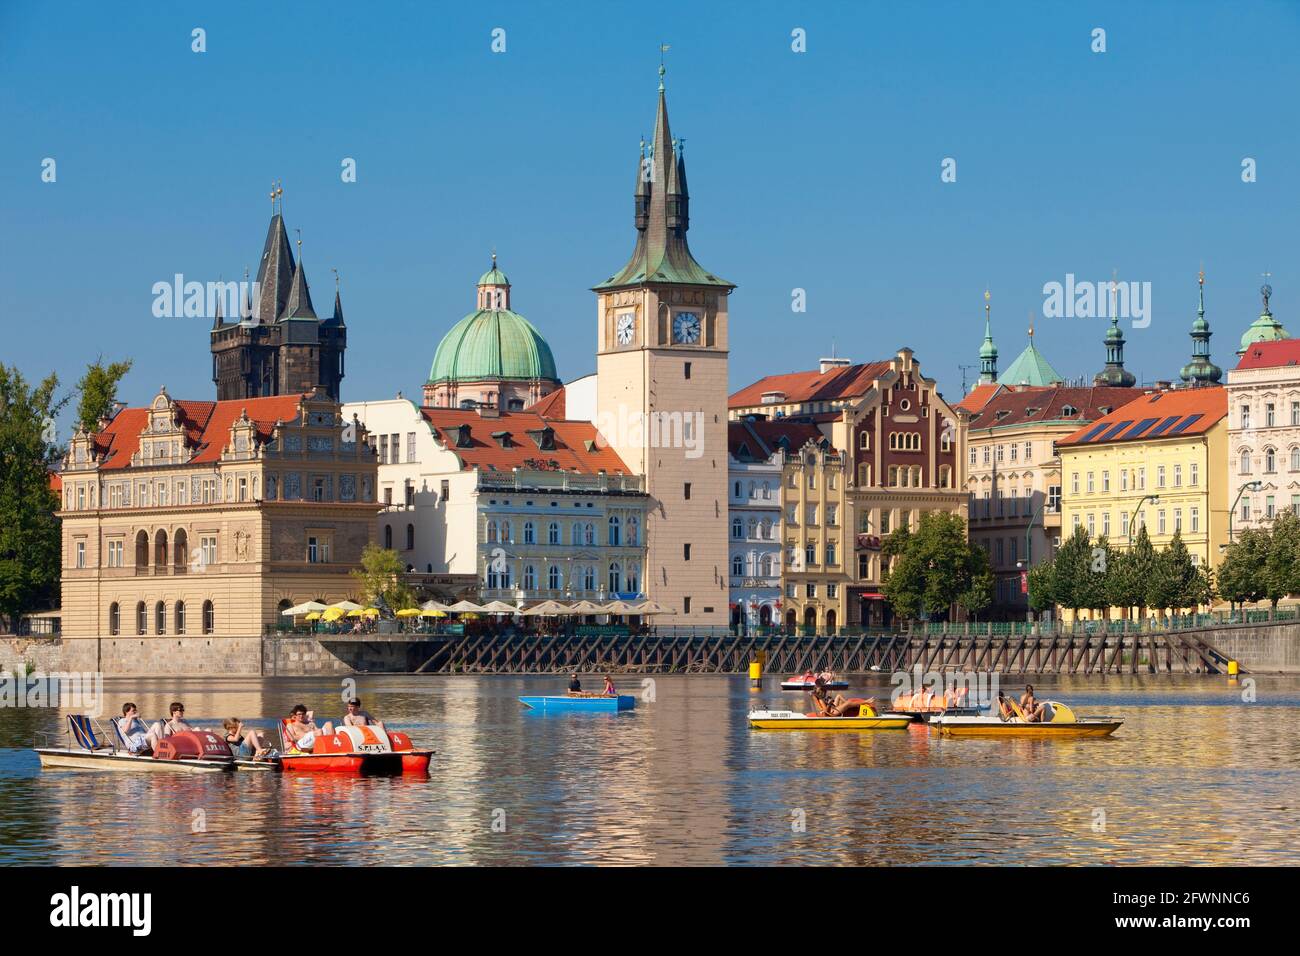 Praga - Novotneho Lavka, smetanovo museum, le torri della città vecchia e barche Foto Stock